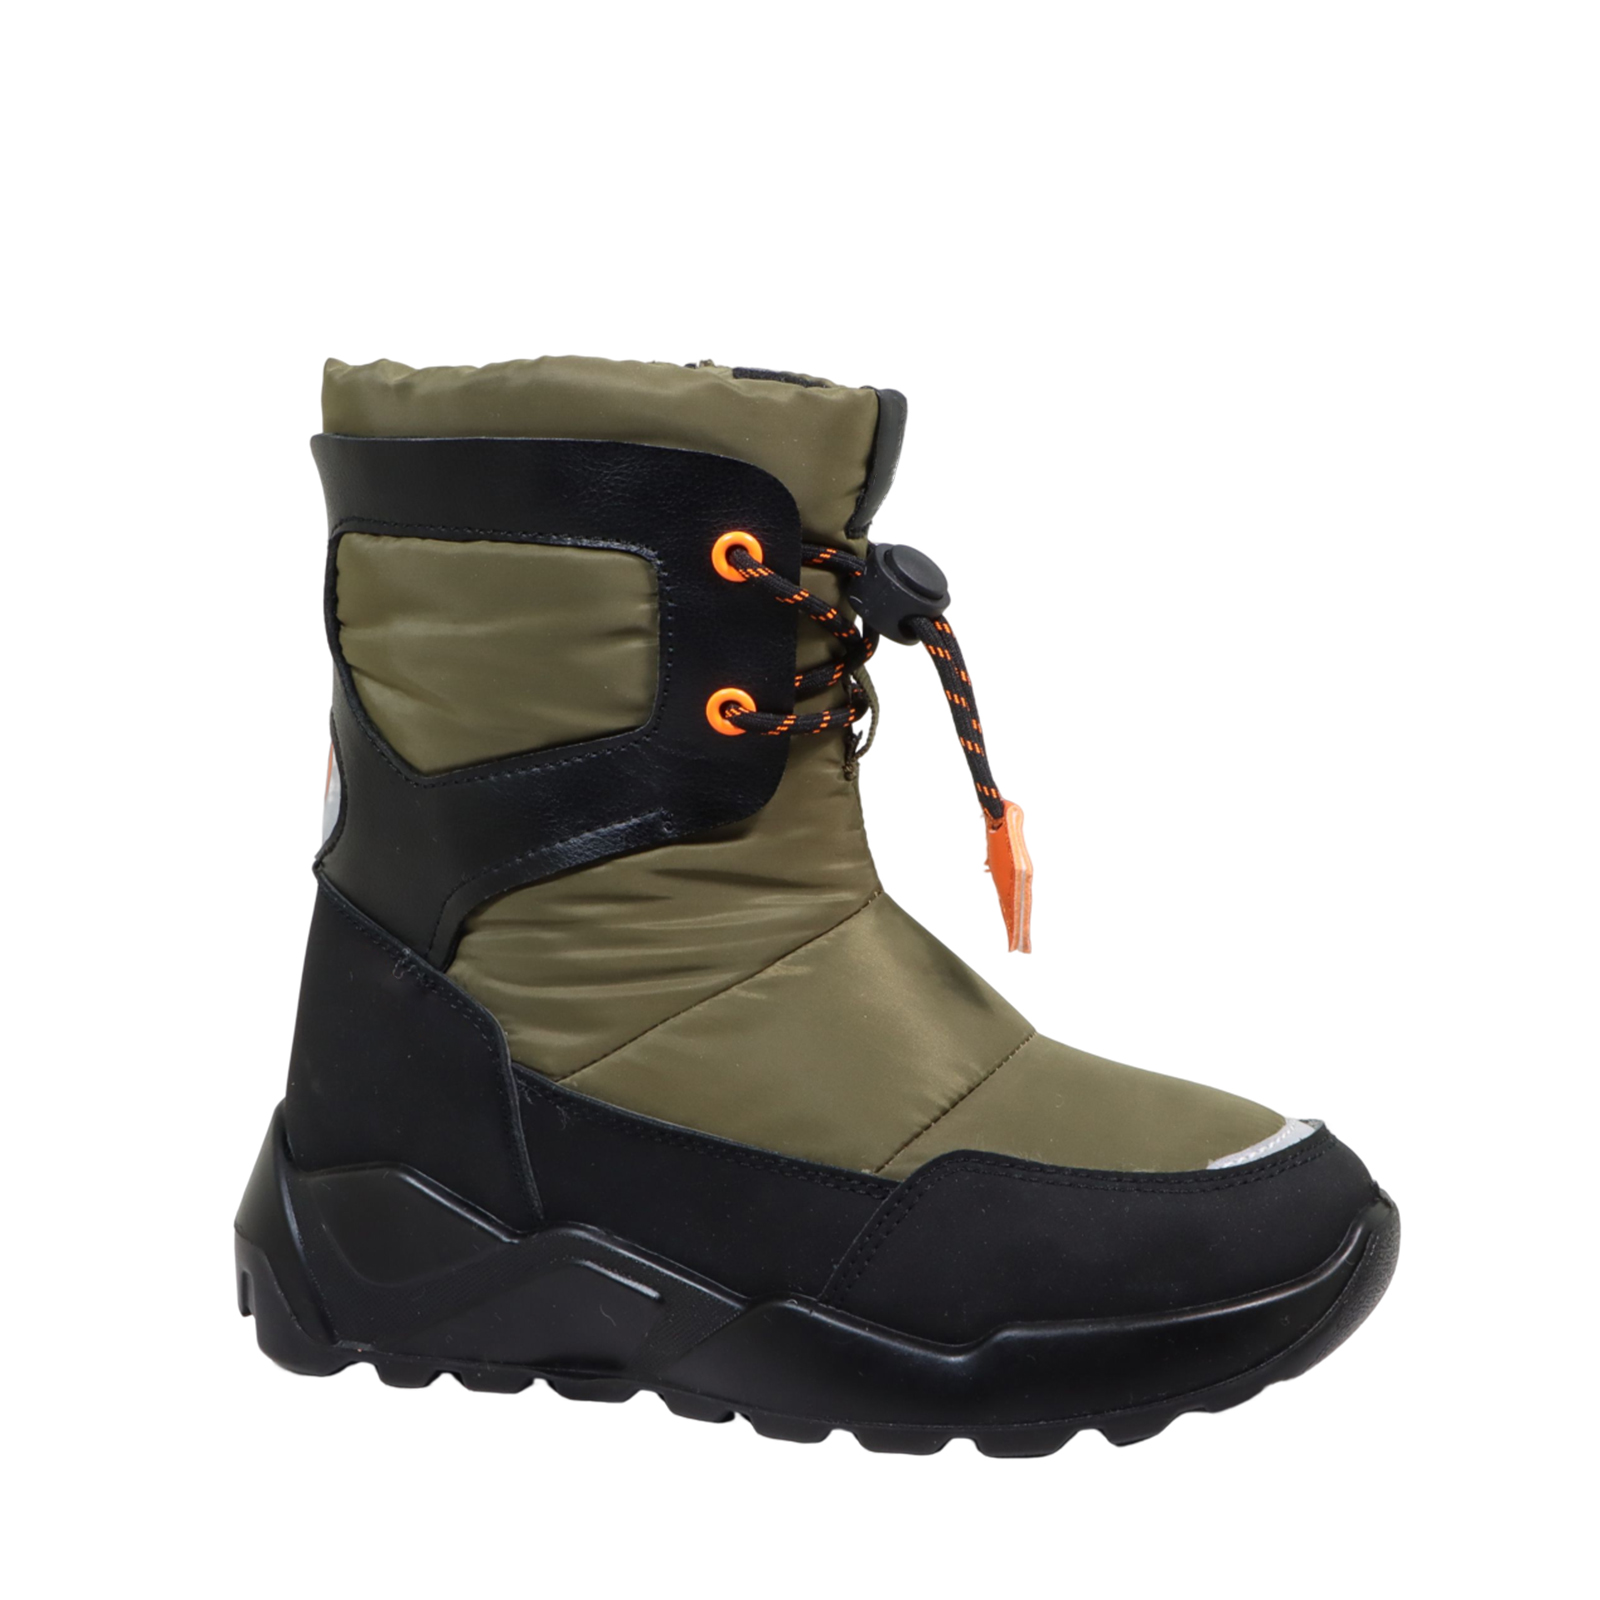 New design waterproof Boots for children